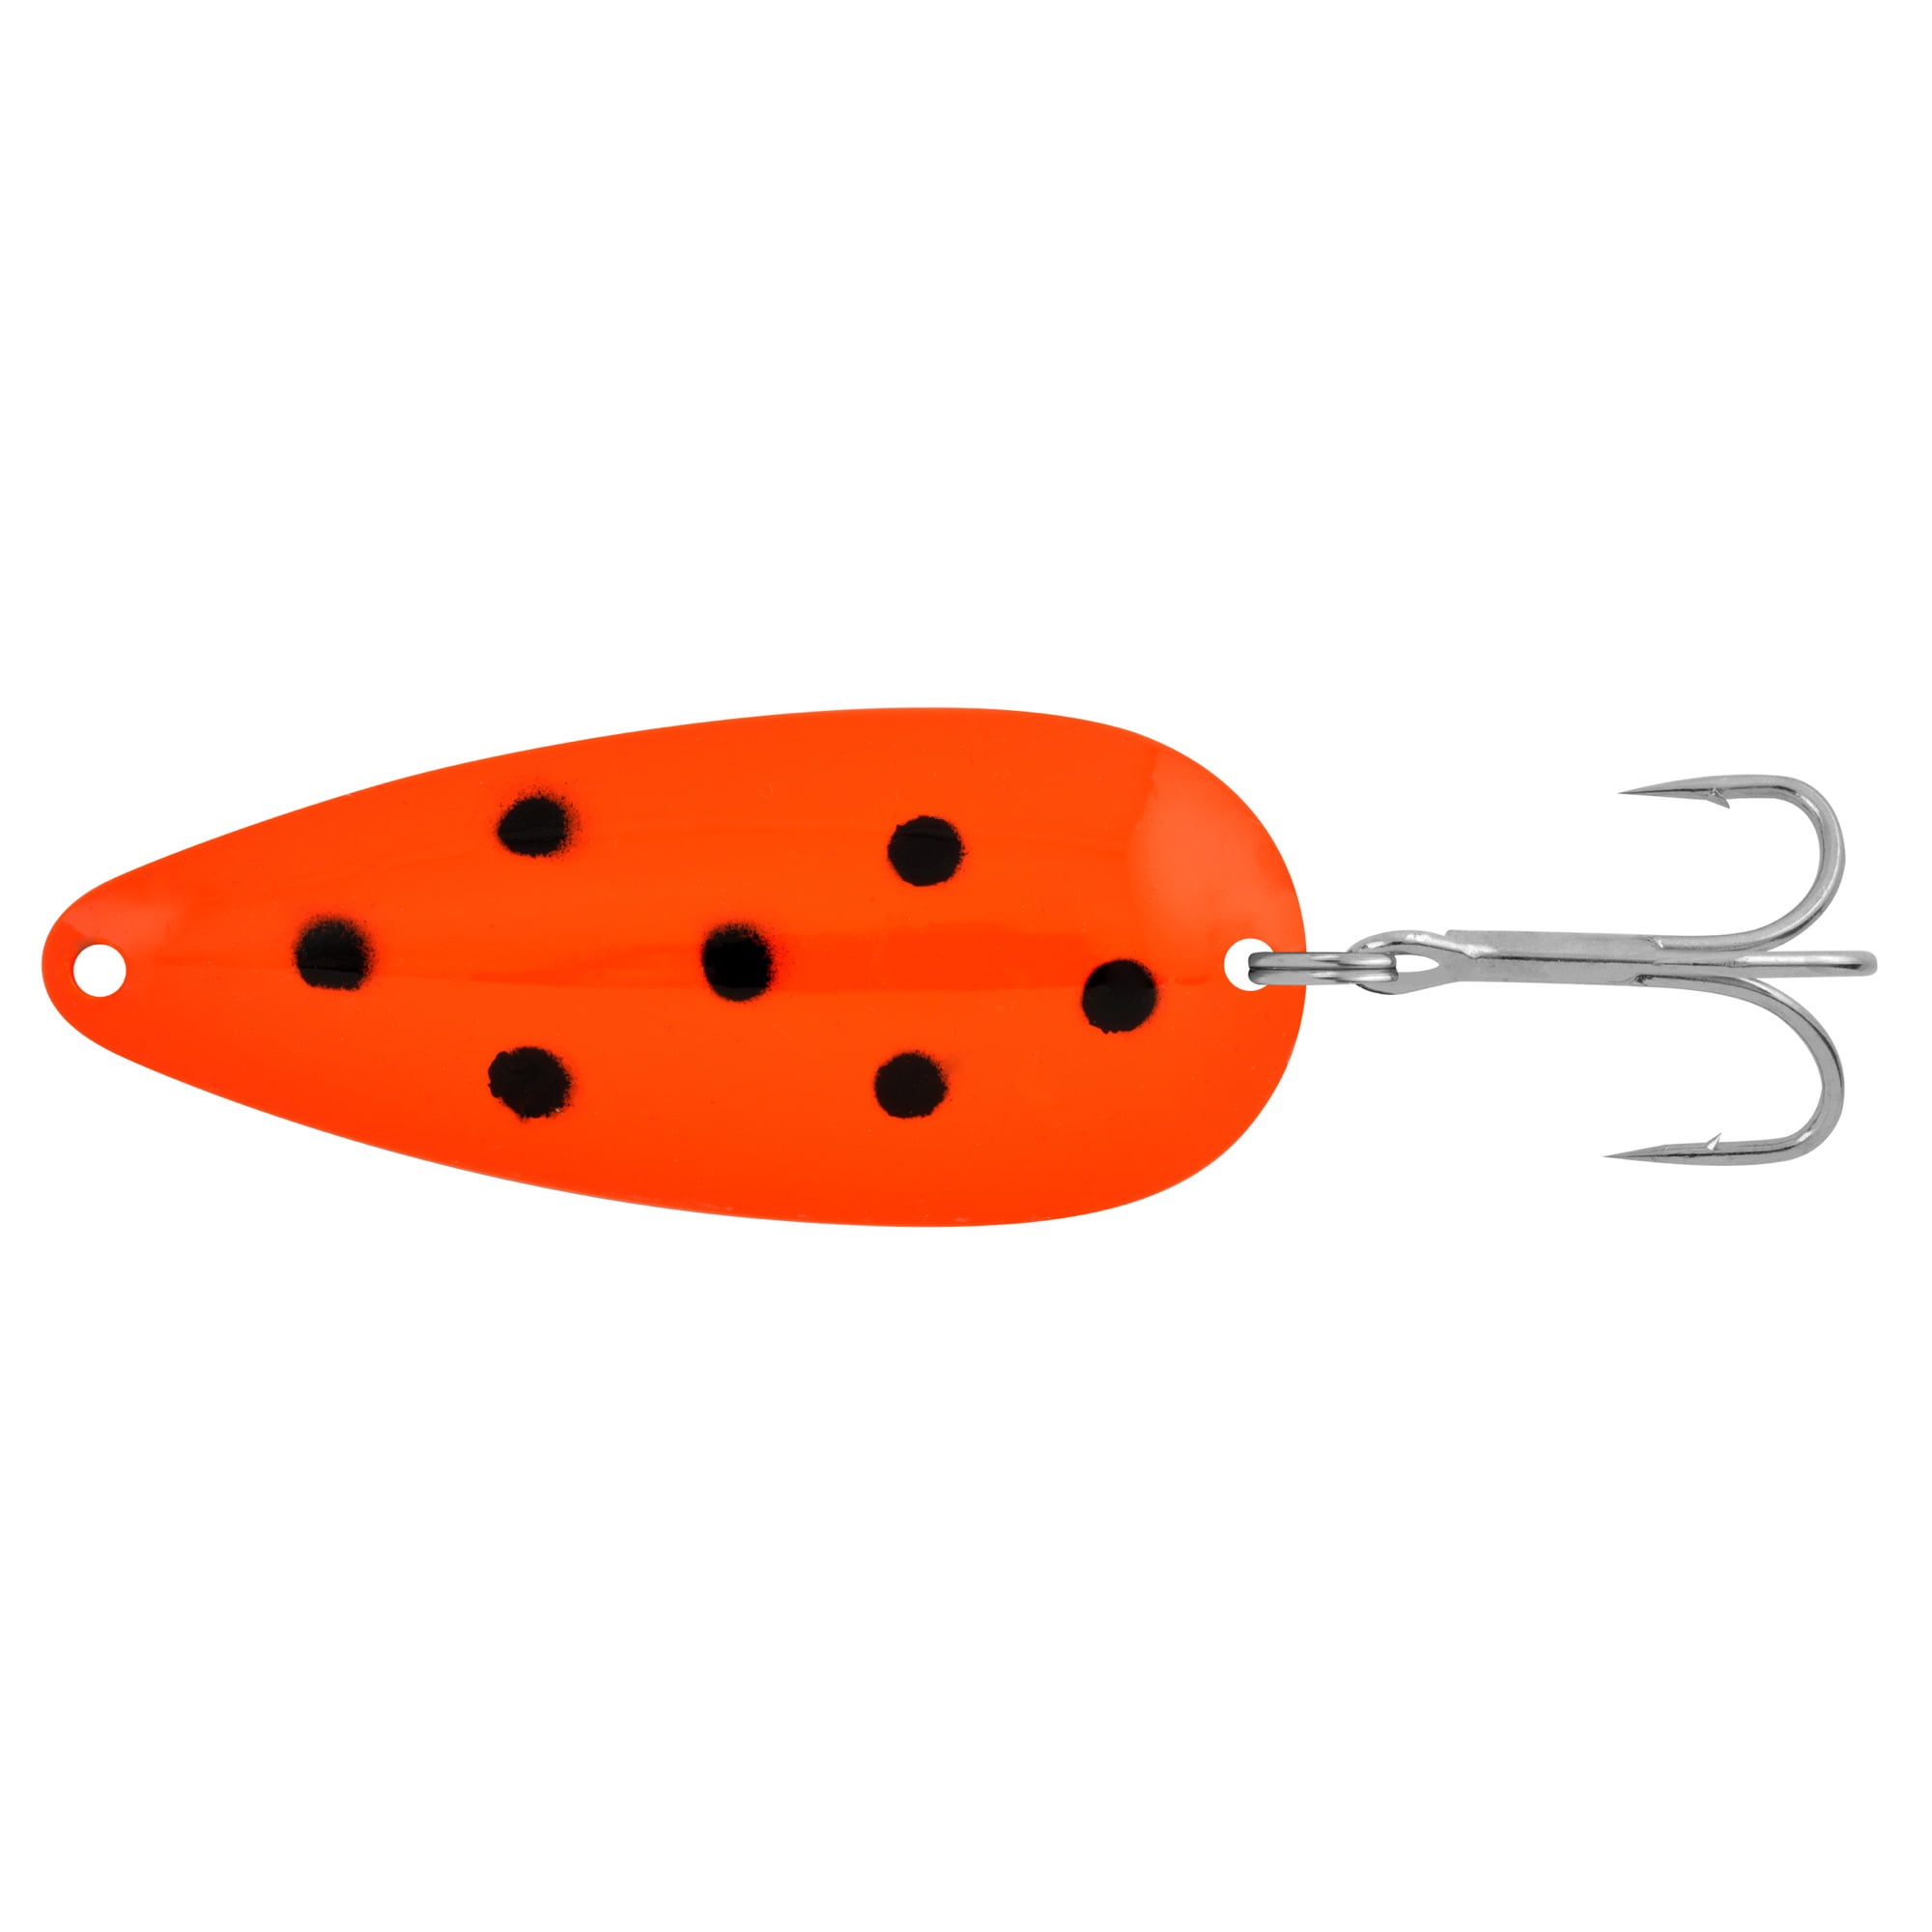 Apex SP12-5 Gamefish Spoon 1/2oz Orange/Black